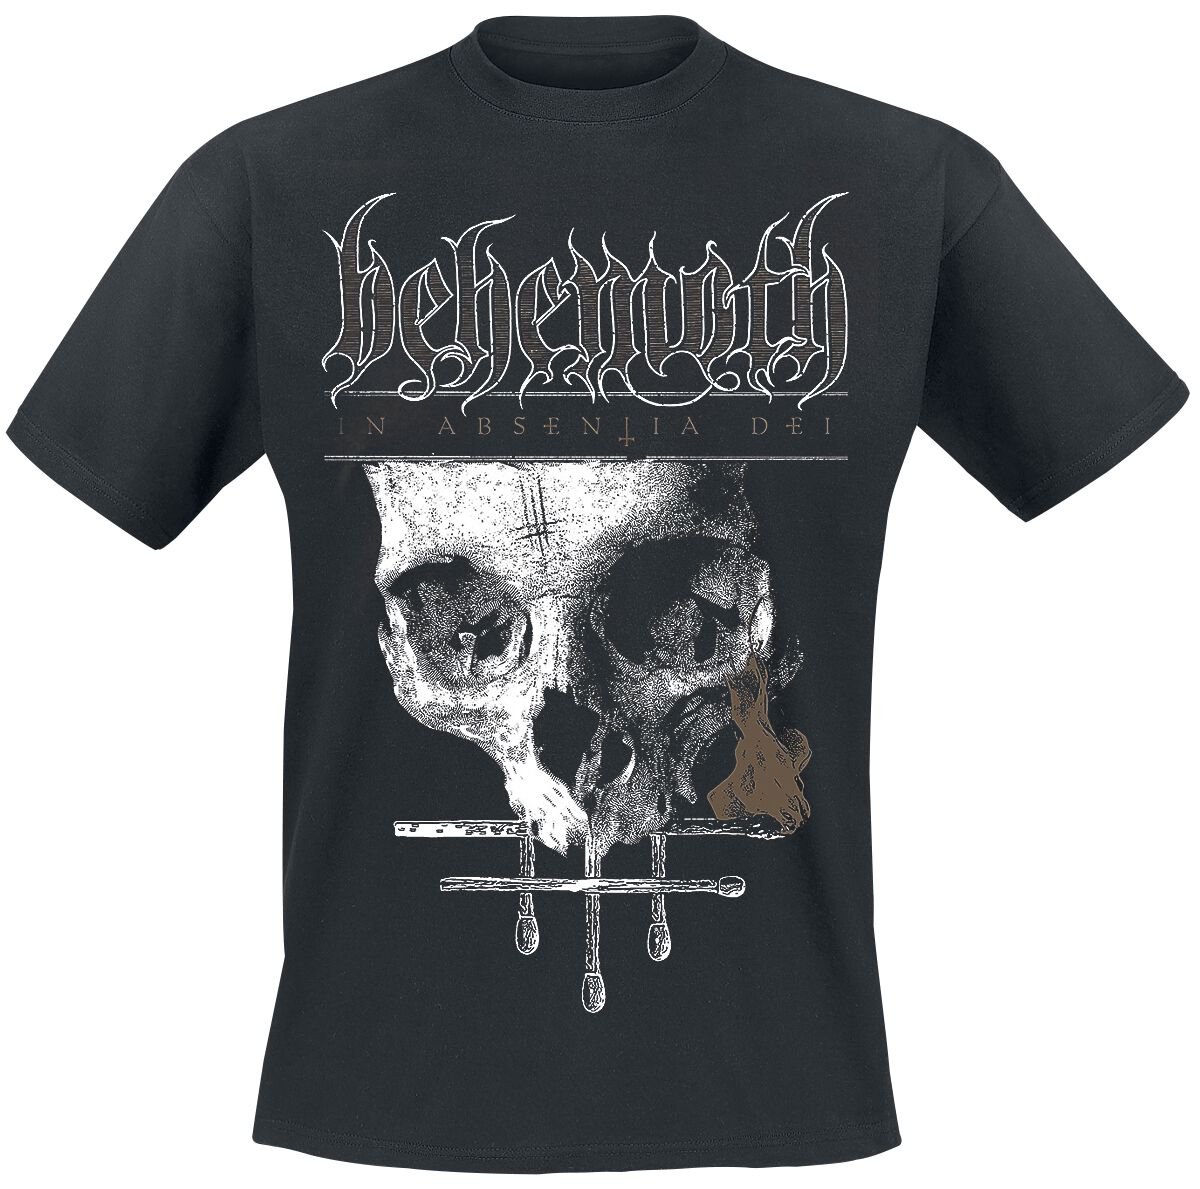 Image of Behemoth In Absentia Dei T-Shirt schwarz